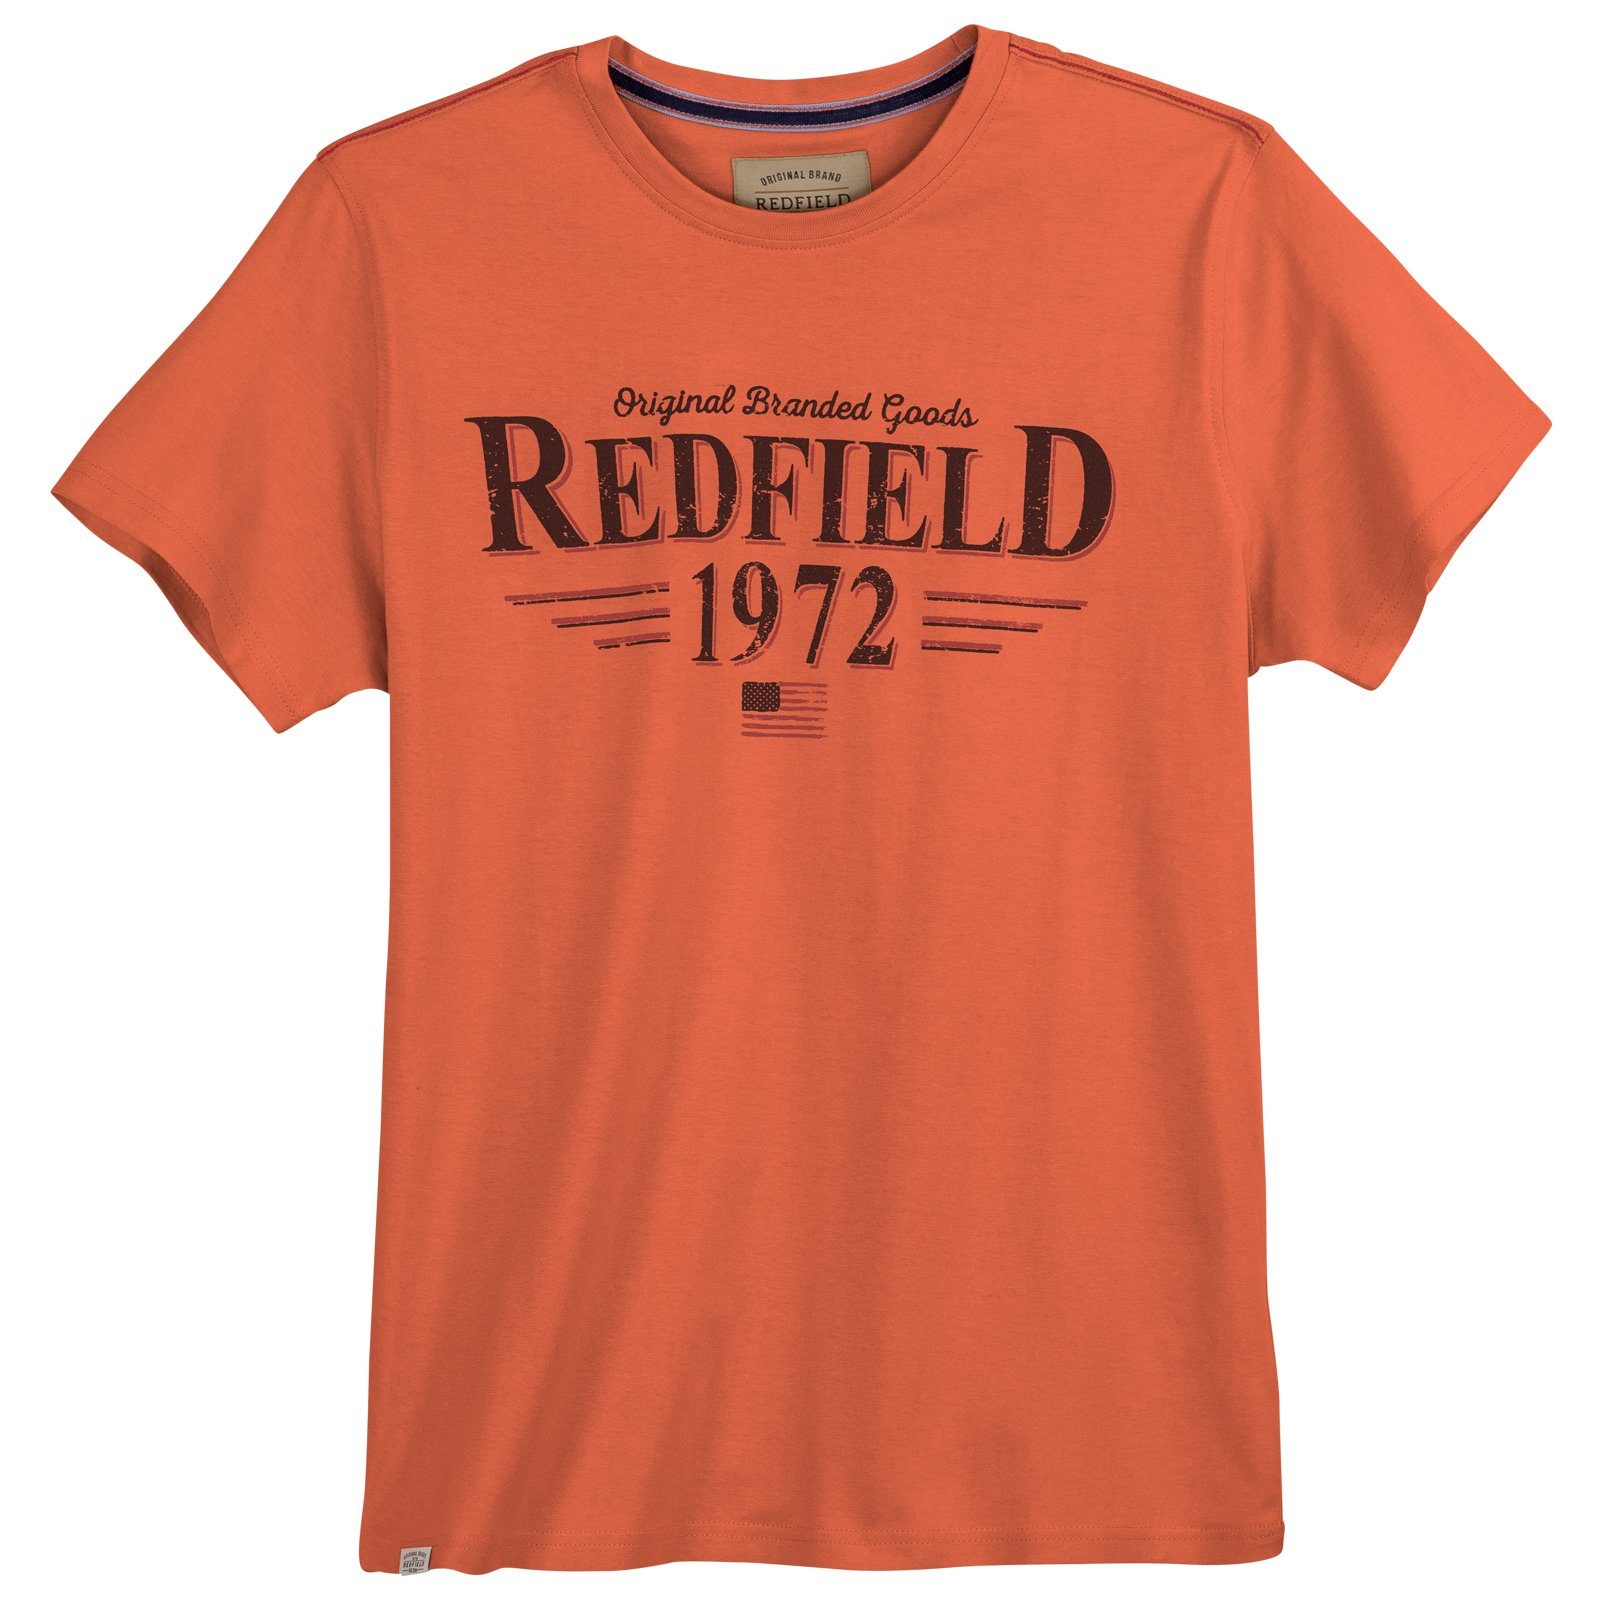 redfield Rundhalsshirt Große Redfield Logo-Print cooler koralle T-Shirt Herren Größen